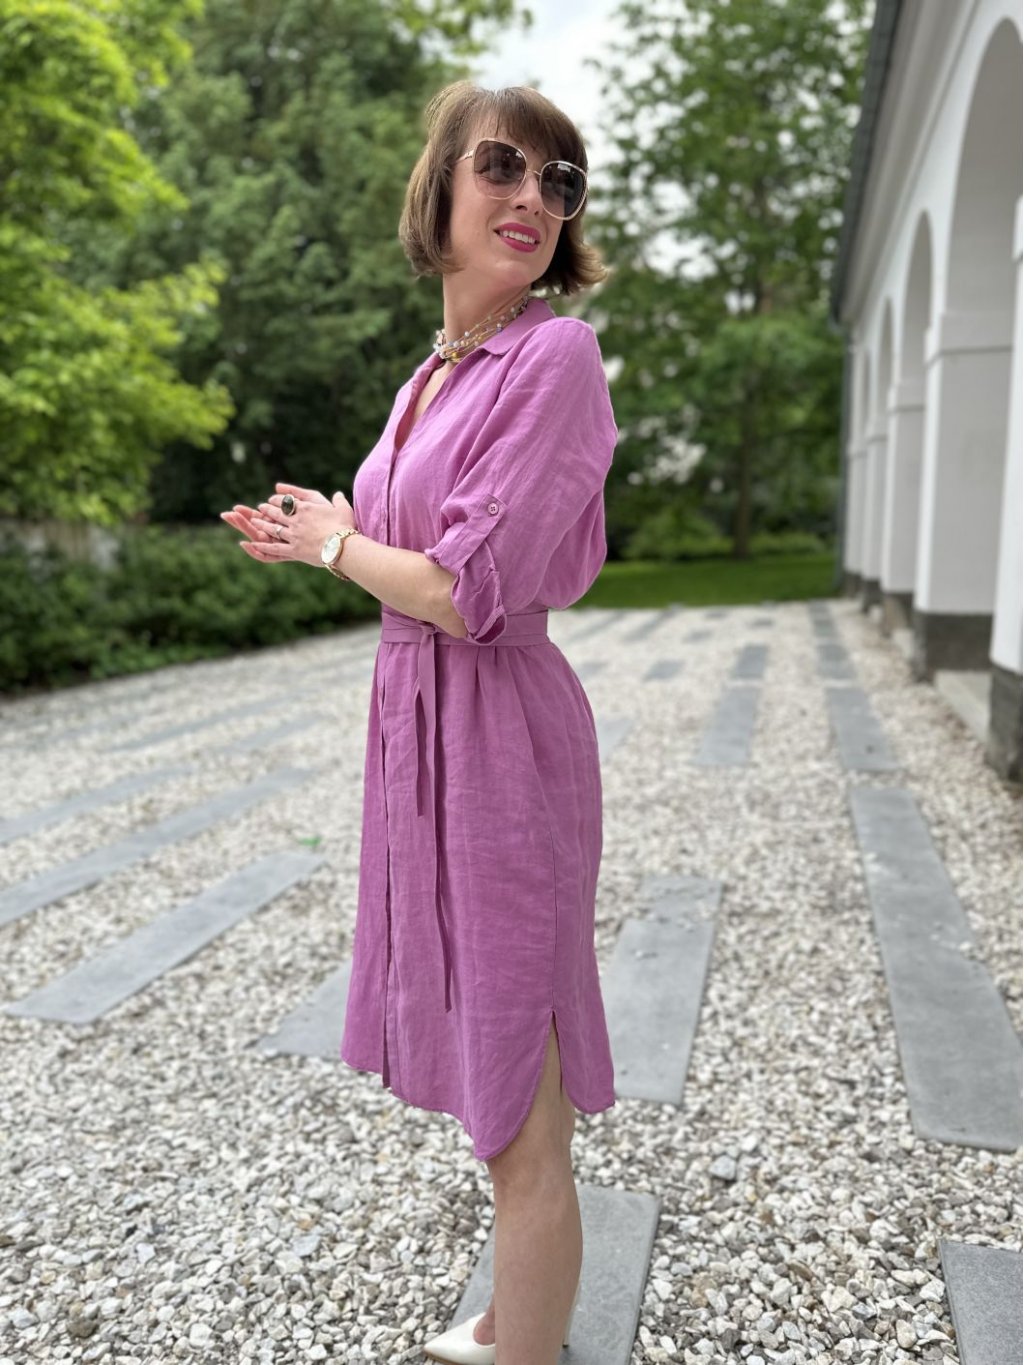 Šaty Kyra Alondra světle fialové košilové lněné 